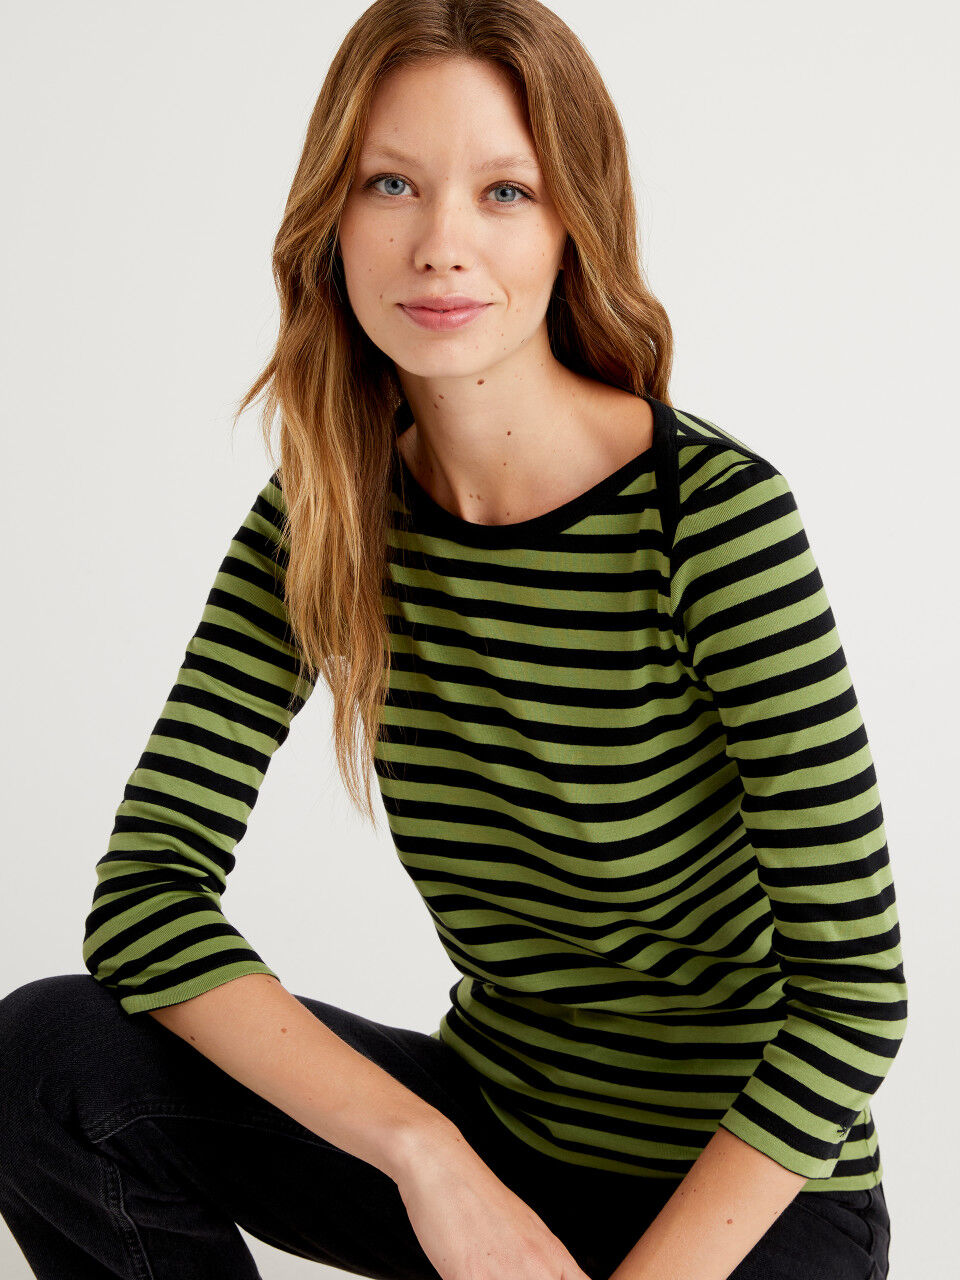 New Women's 100% Cotton Summer Top Striped Cap Sleeve T-Shirt 